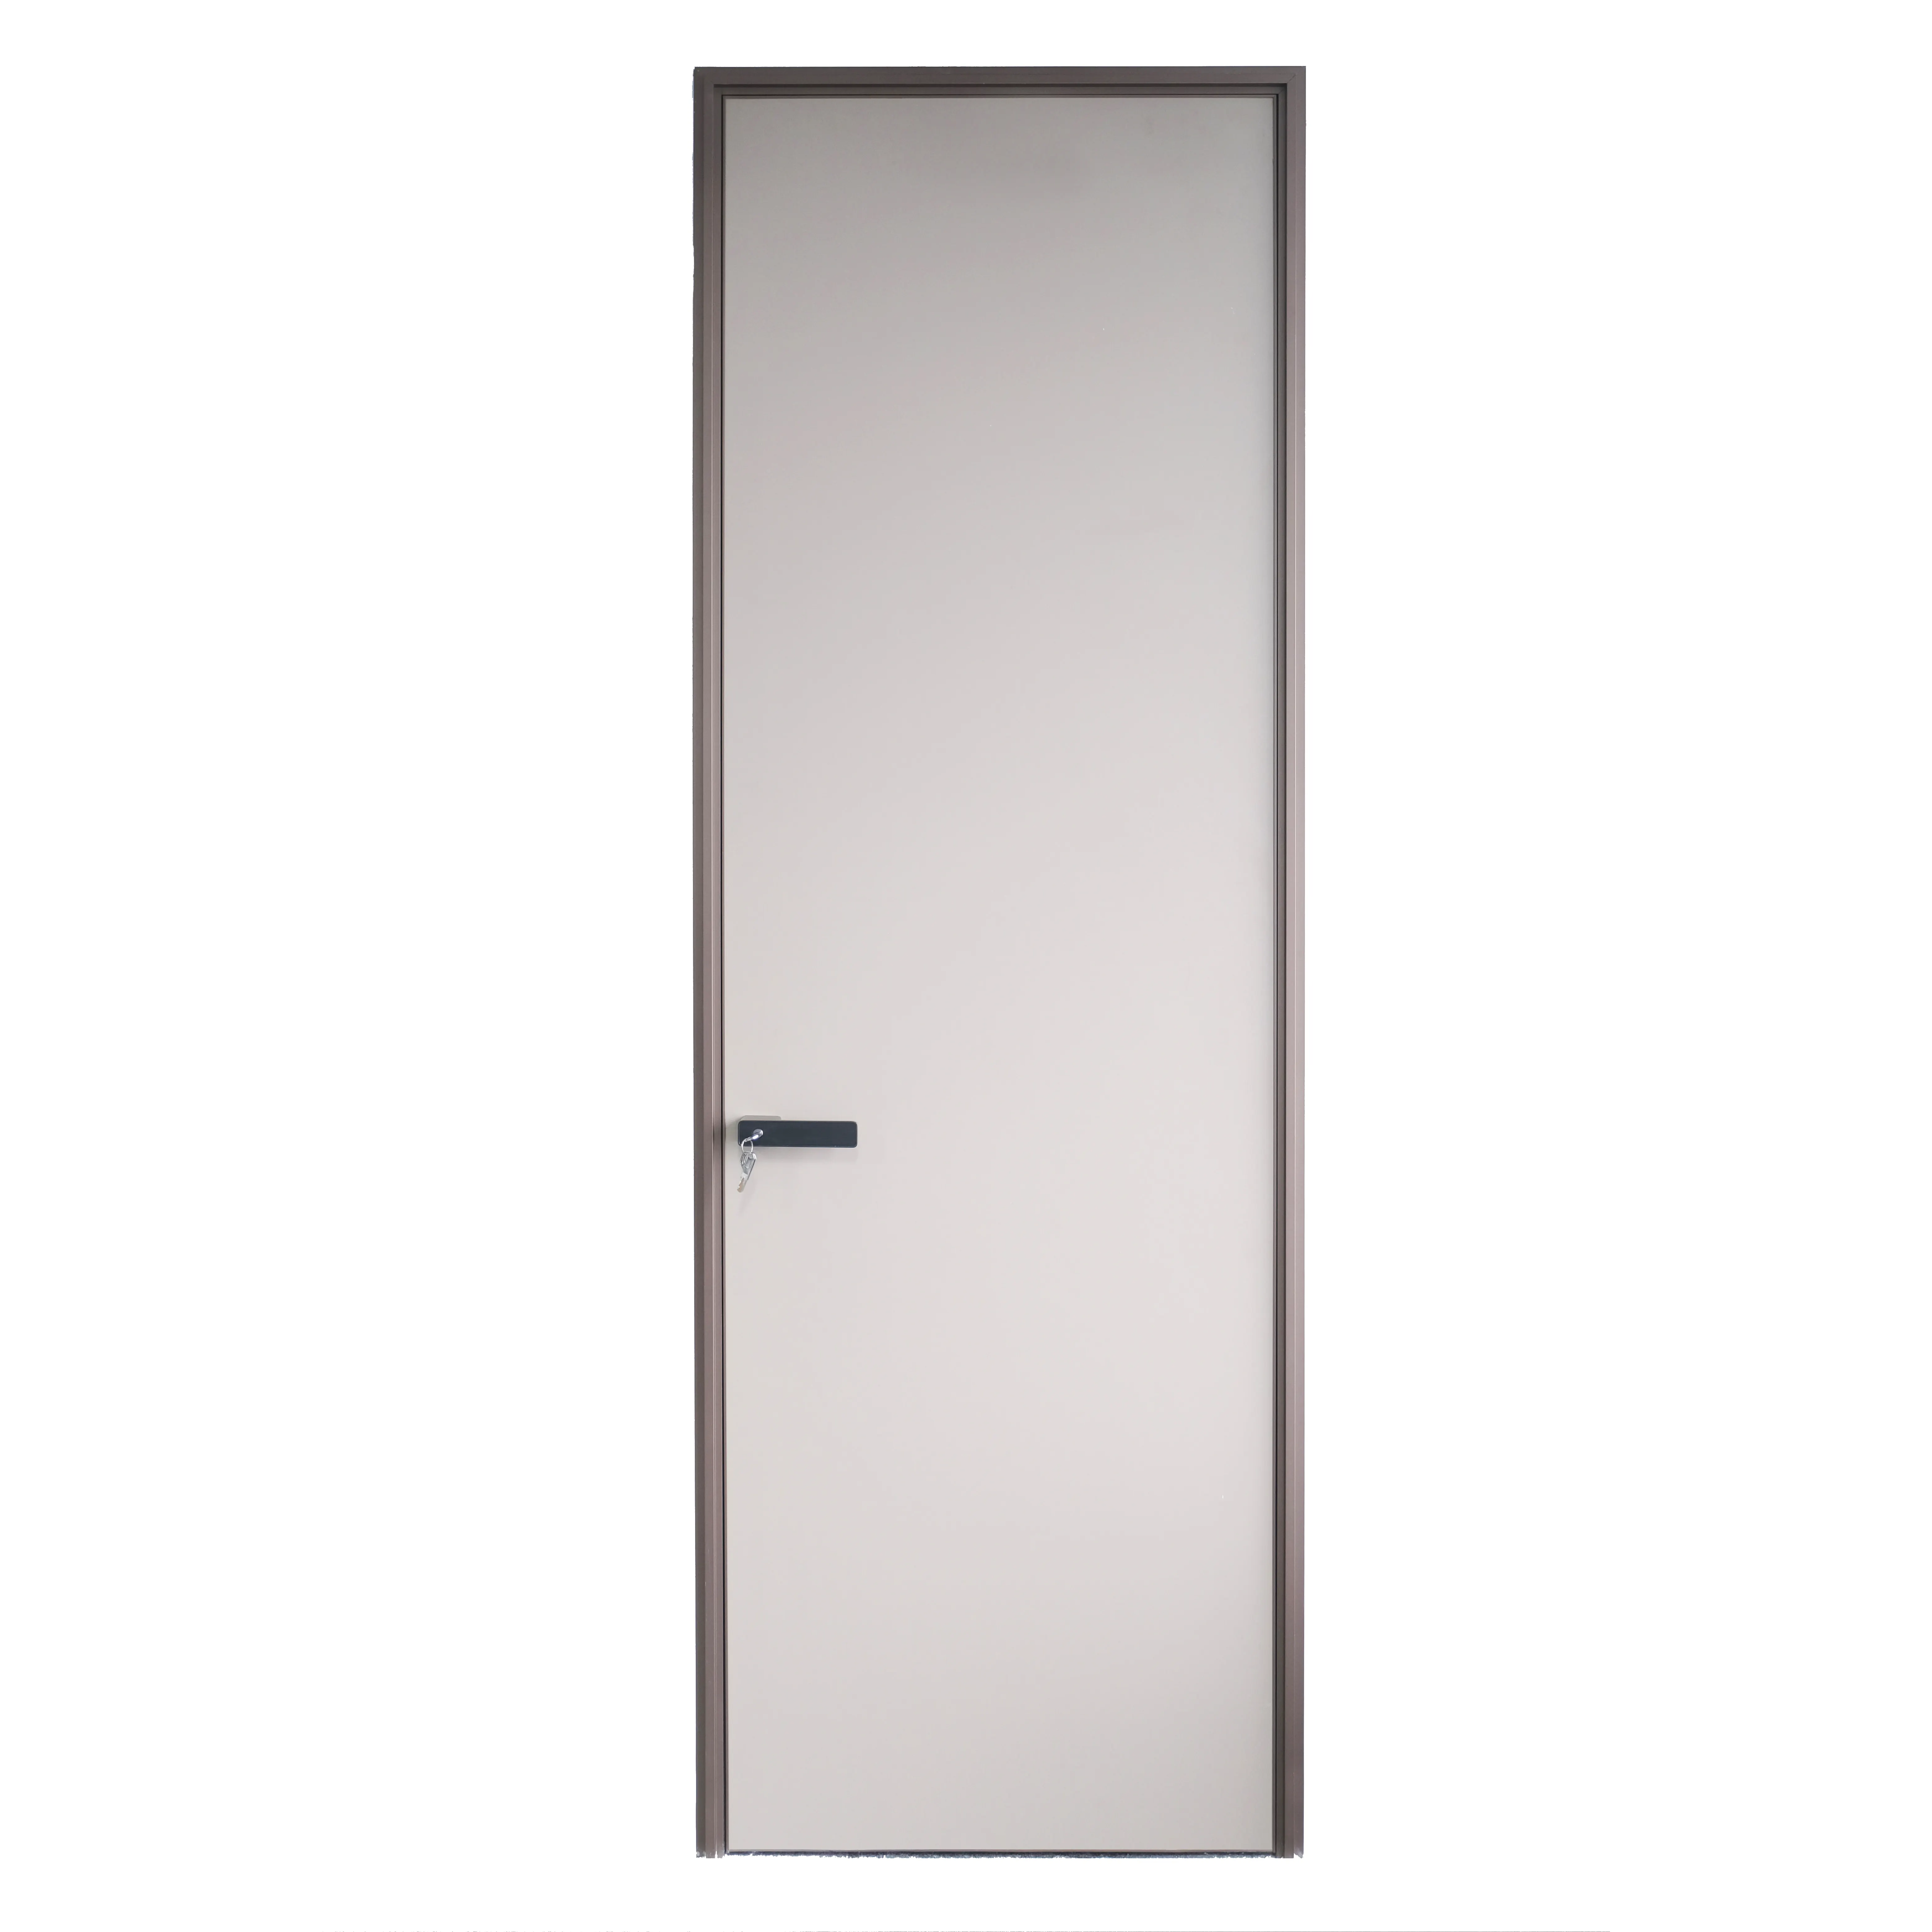 Interior Solid Wooden Doors Aluminum Frame Wooden Hidden Door Ideas For Secret Room